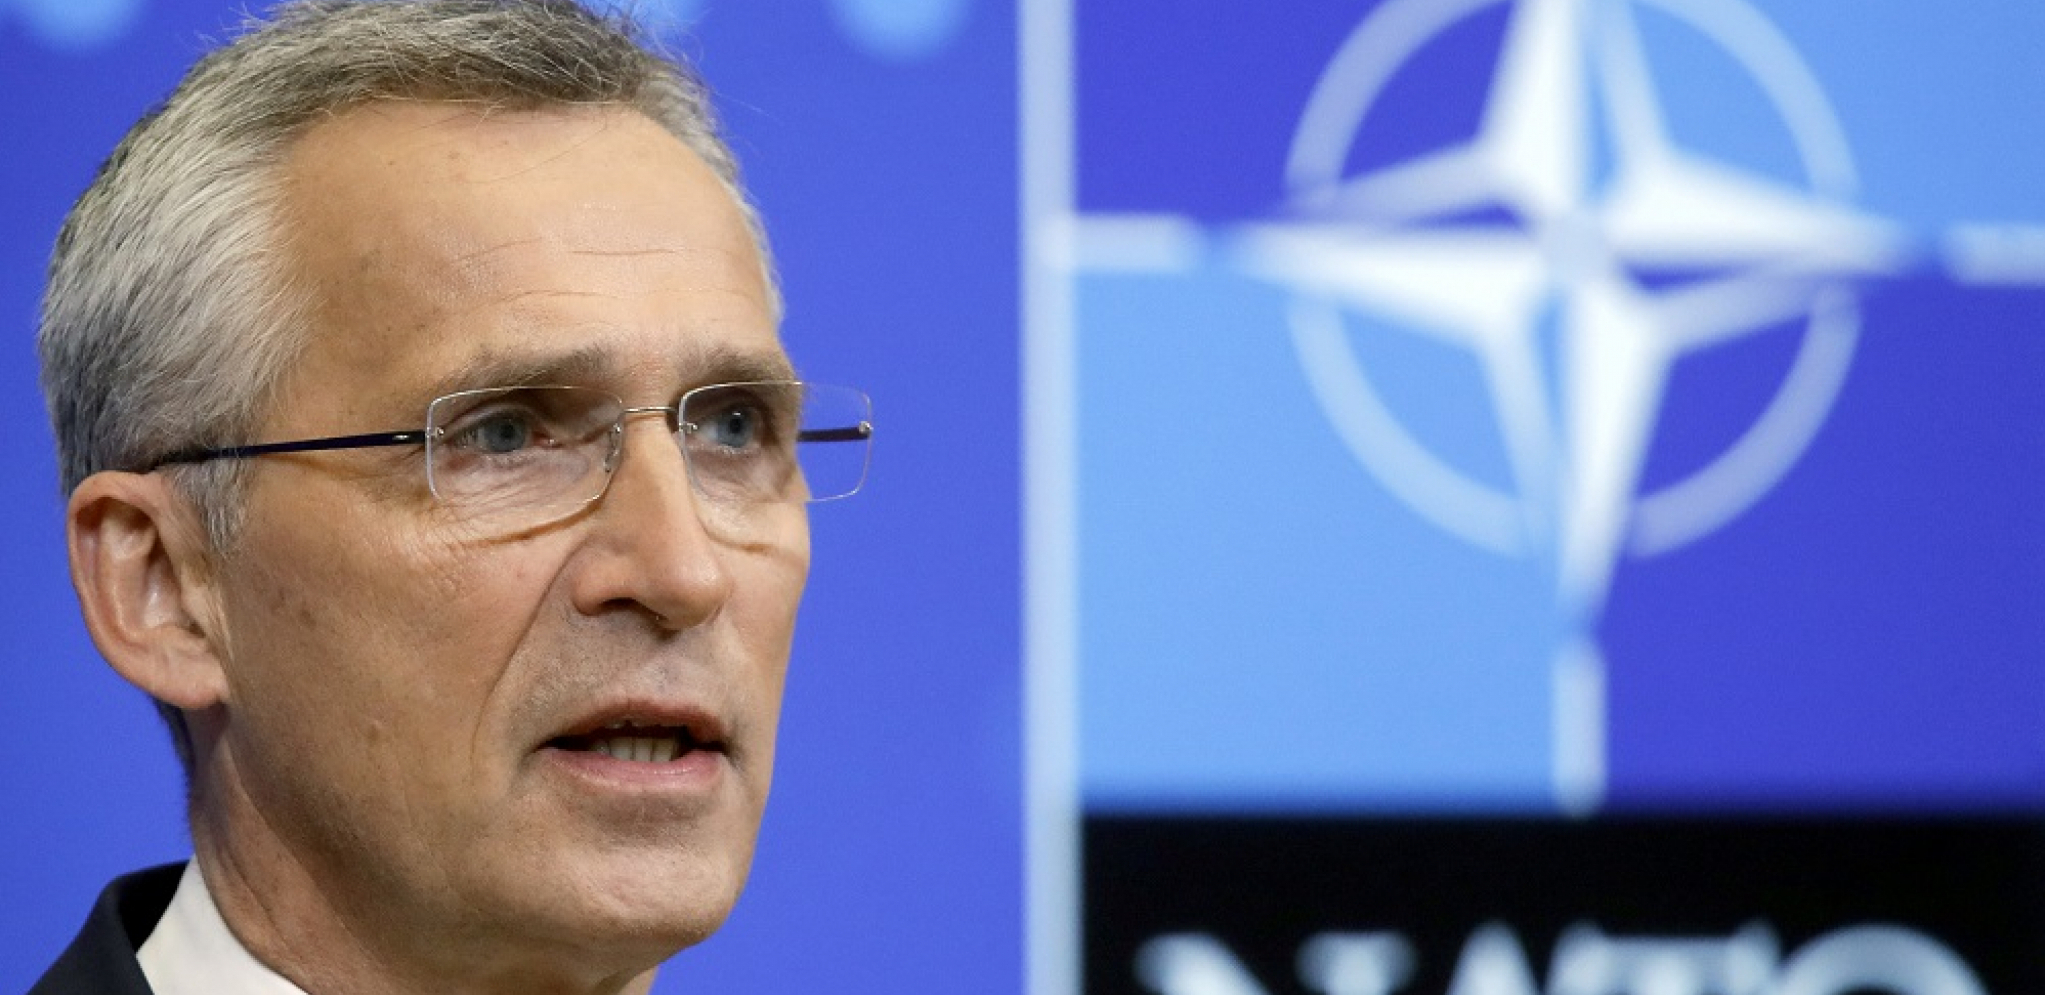 NATO SE OGLASIO O KOSOVU I METOHIJI Stoltenberg zauzeo jasan stav, dve države iz regiona poziva u alijansu